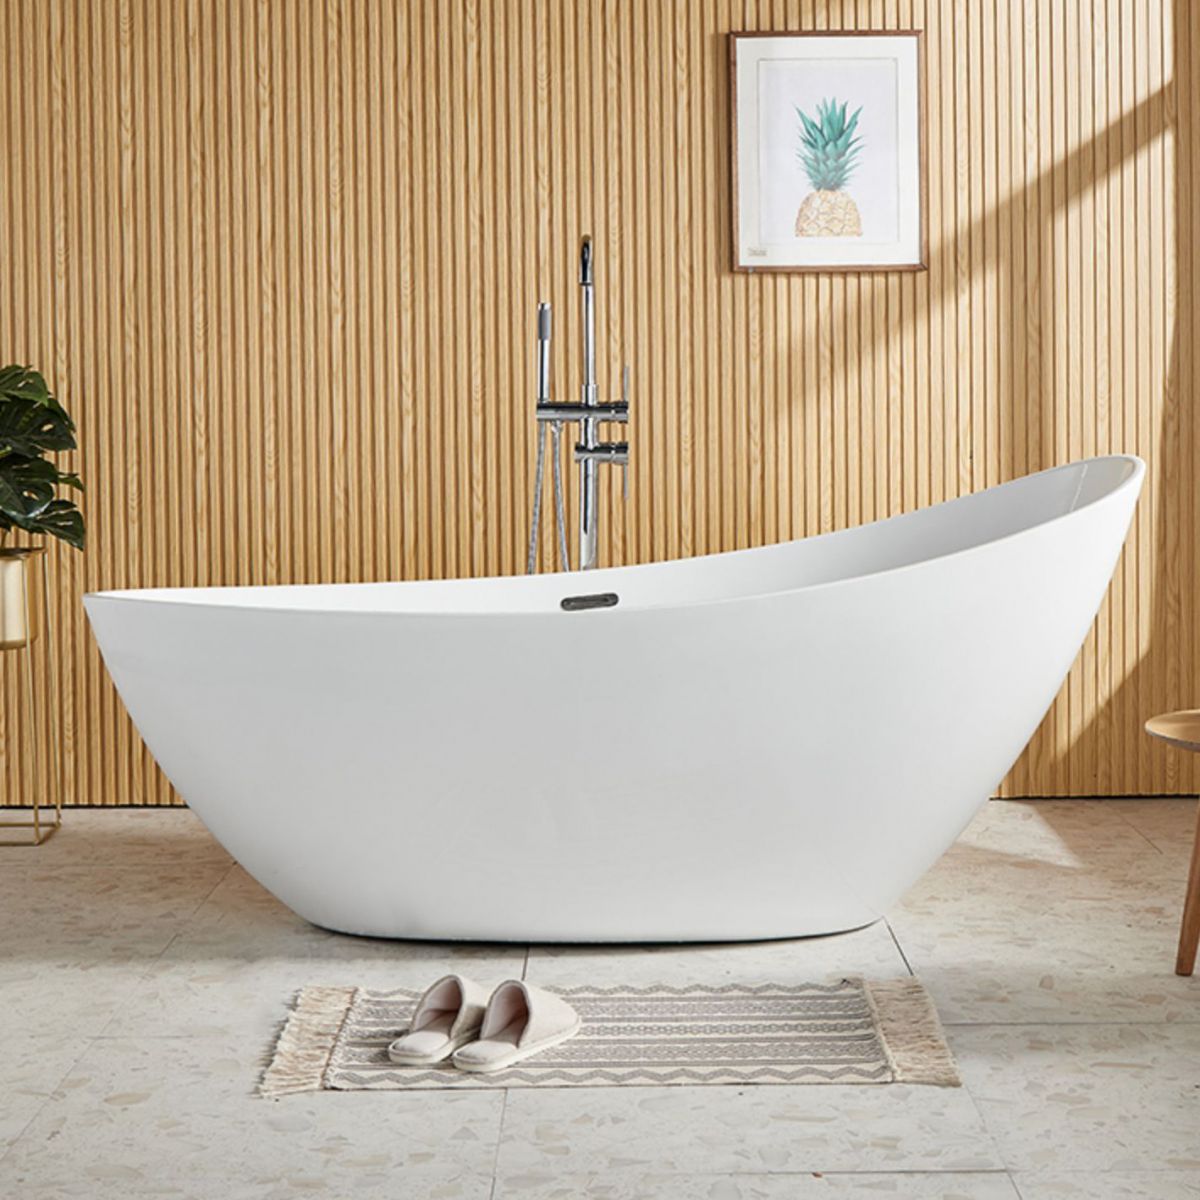 Antique Finish Oval Bathtub Stand Alone Modern Soaking Bath Tub